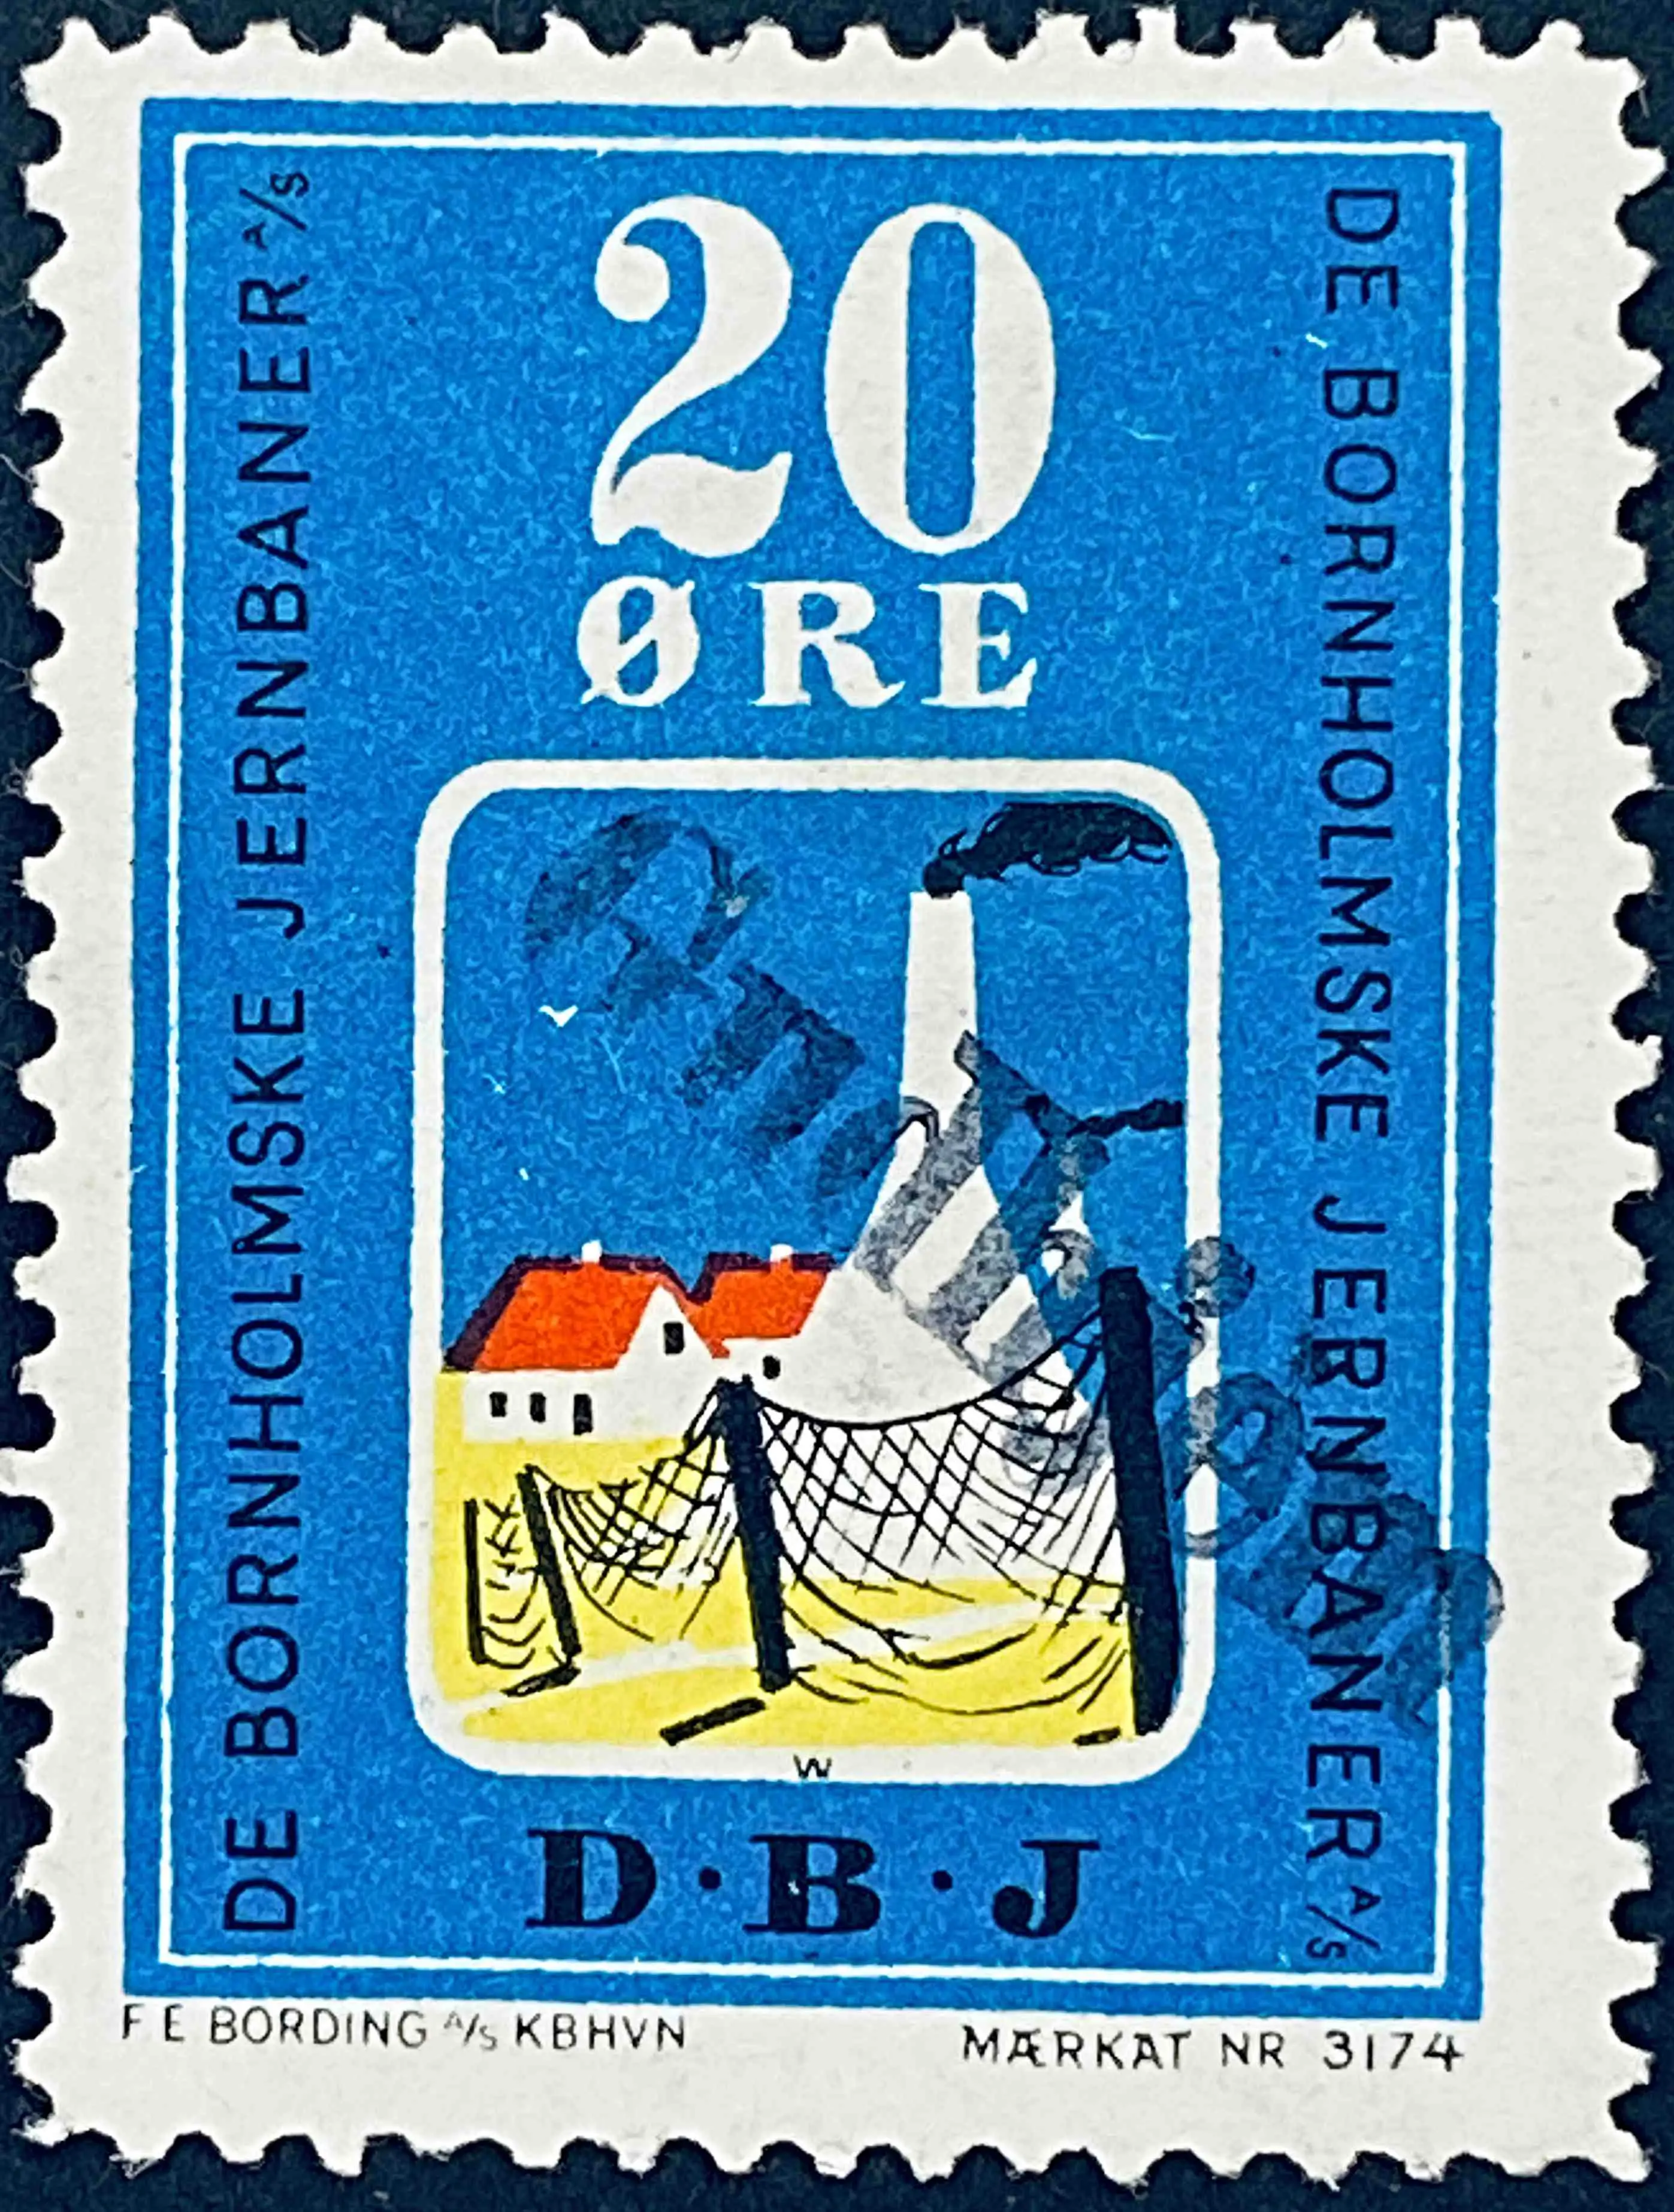 DBJ 8 - 20 Øre - Flerfarvet - trykkeri: F E Bording med mærke nummer: 3174 - stemplet på Gudhjem Station (Gh).